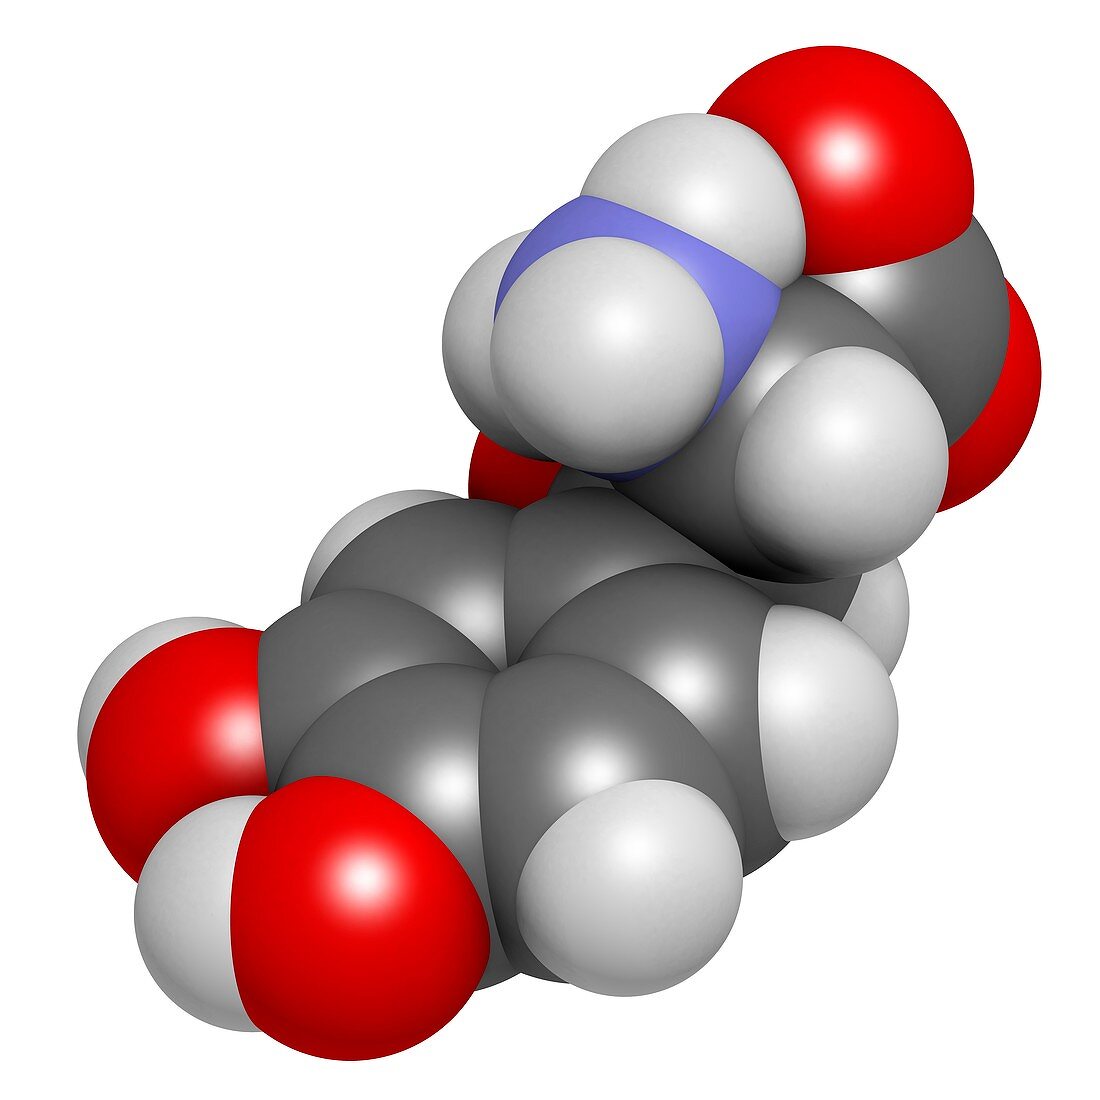 Droxidopa hypotension drug molecule